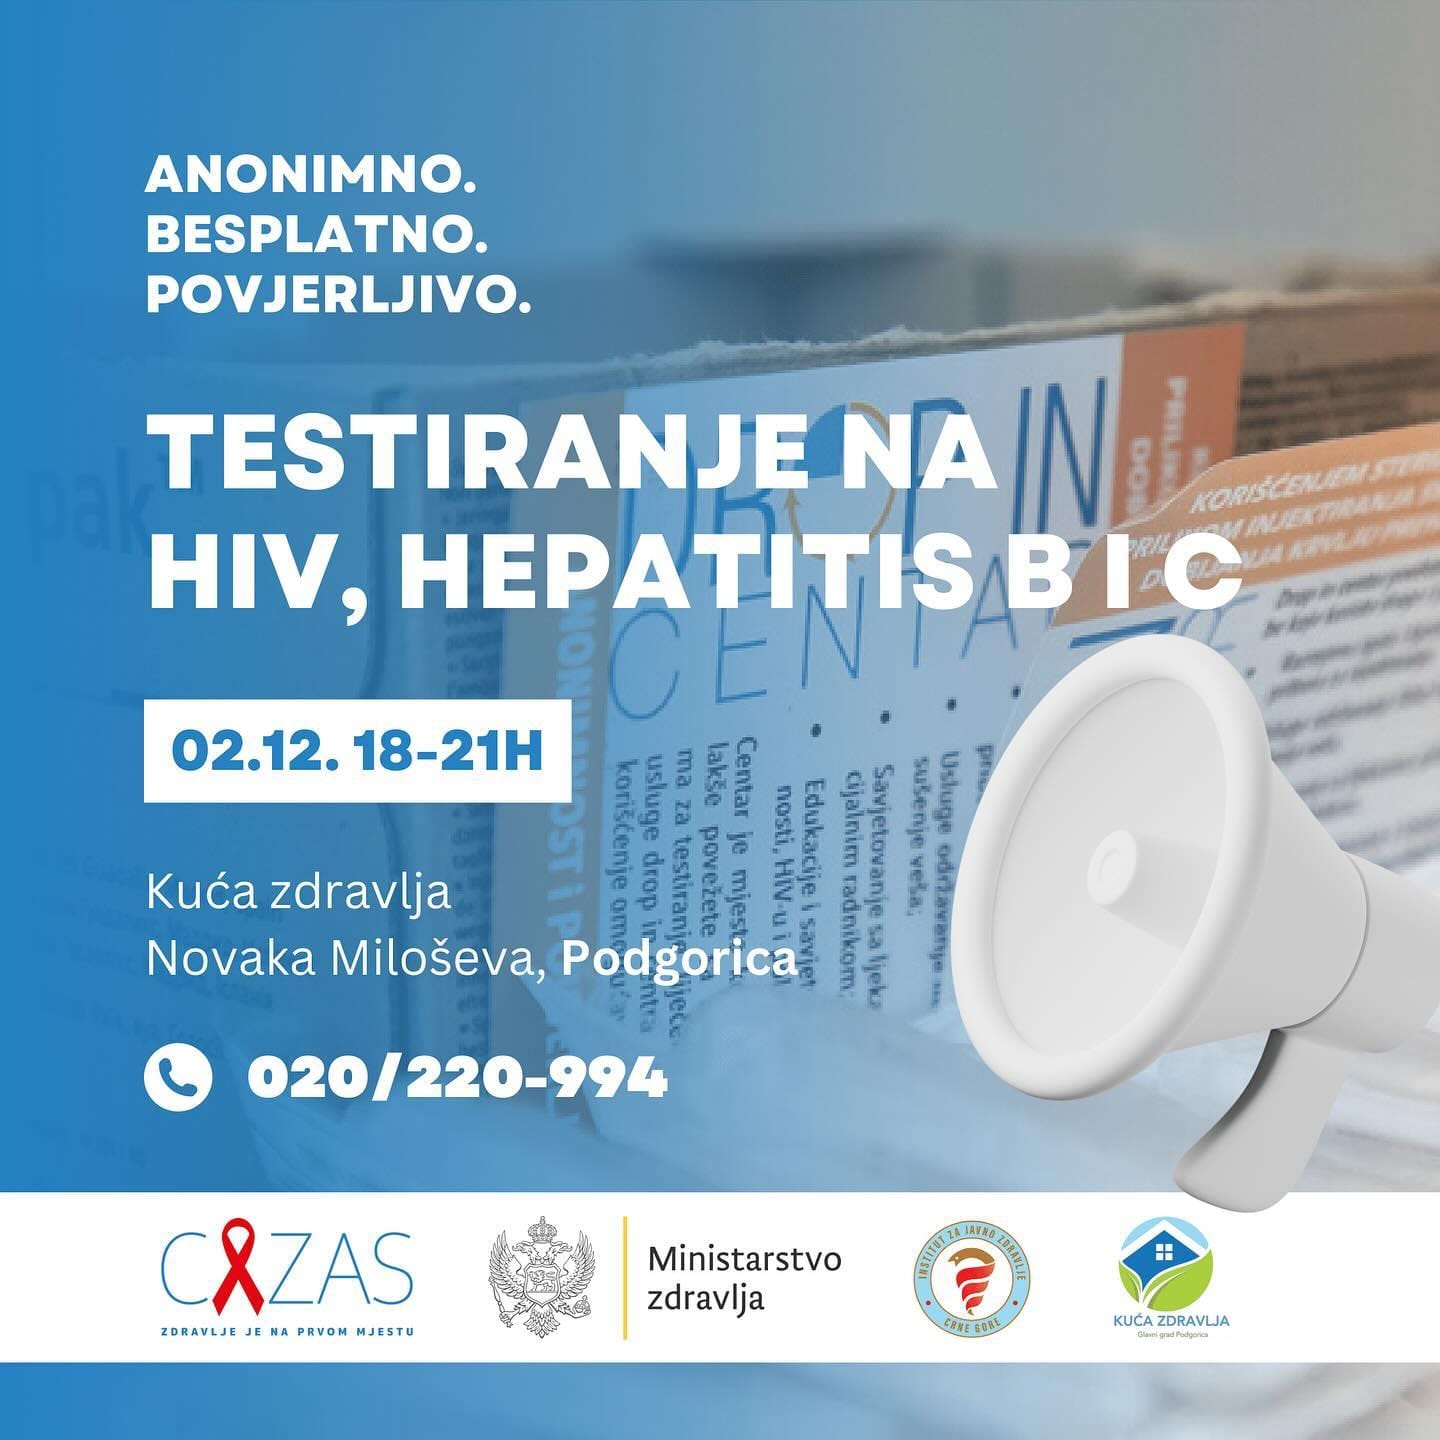 U Kući zdravlja besplatno testiranje na HIV, hepatitis B i C